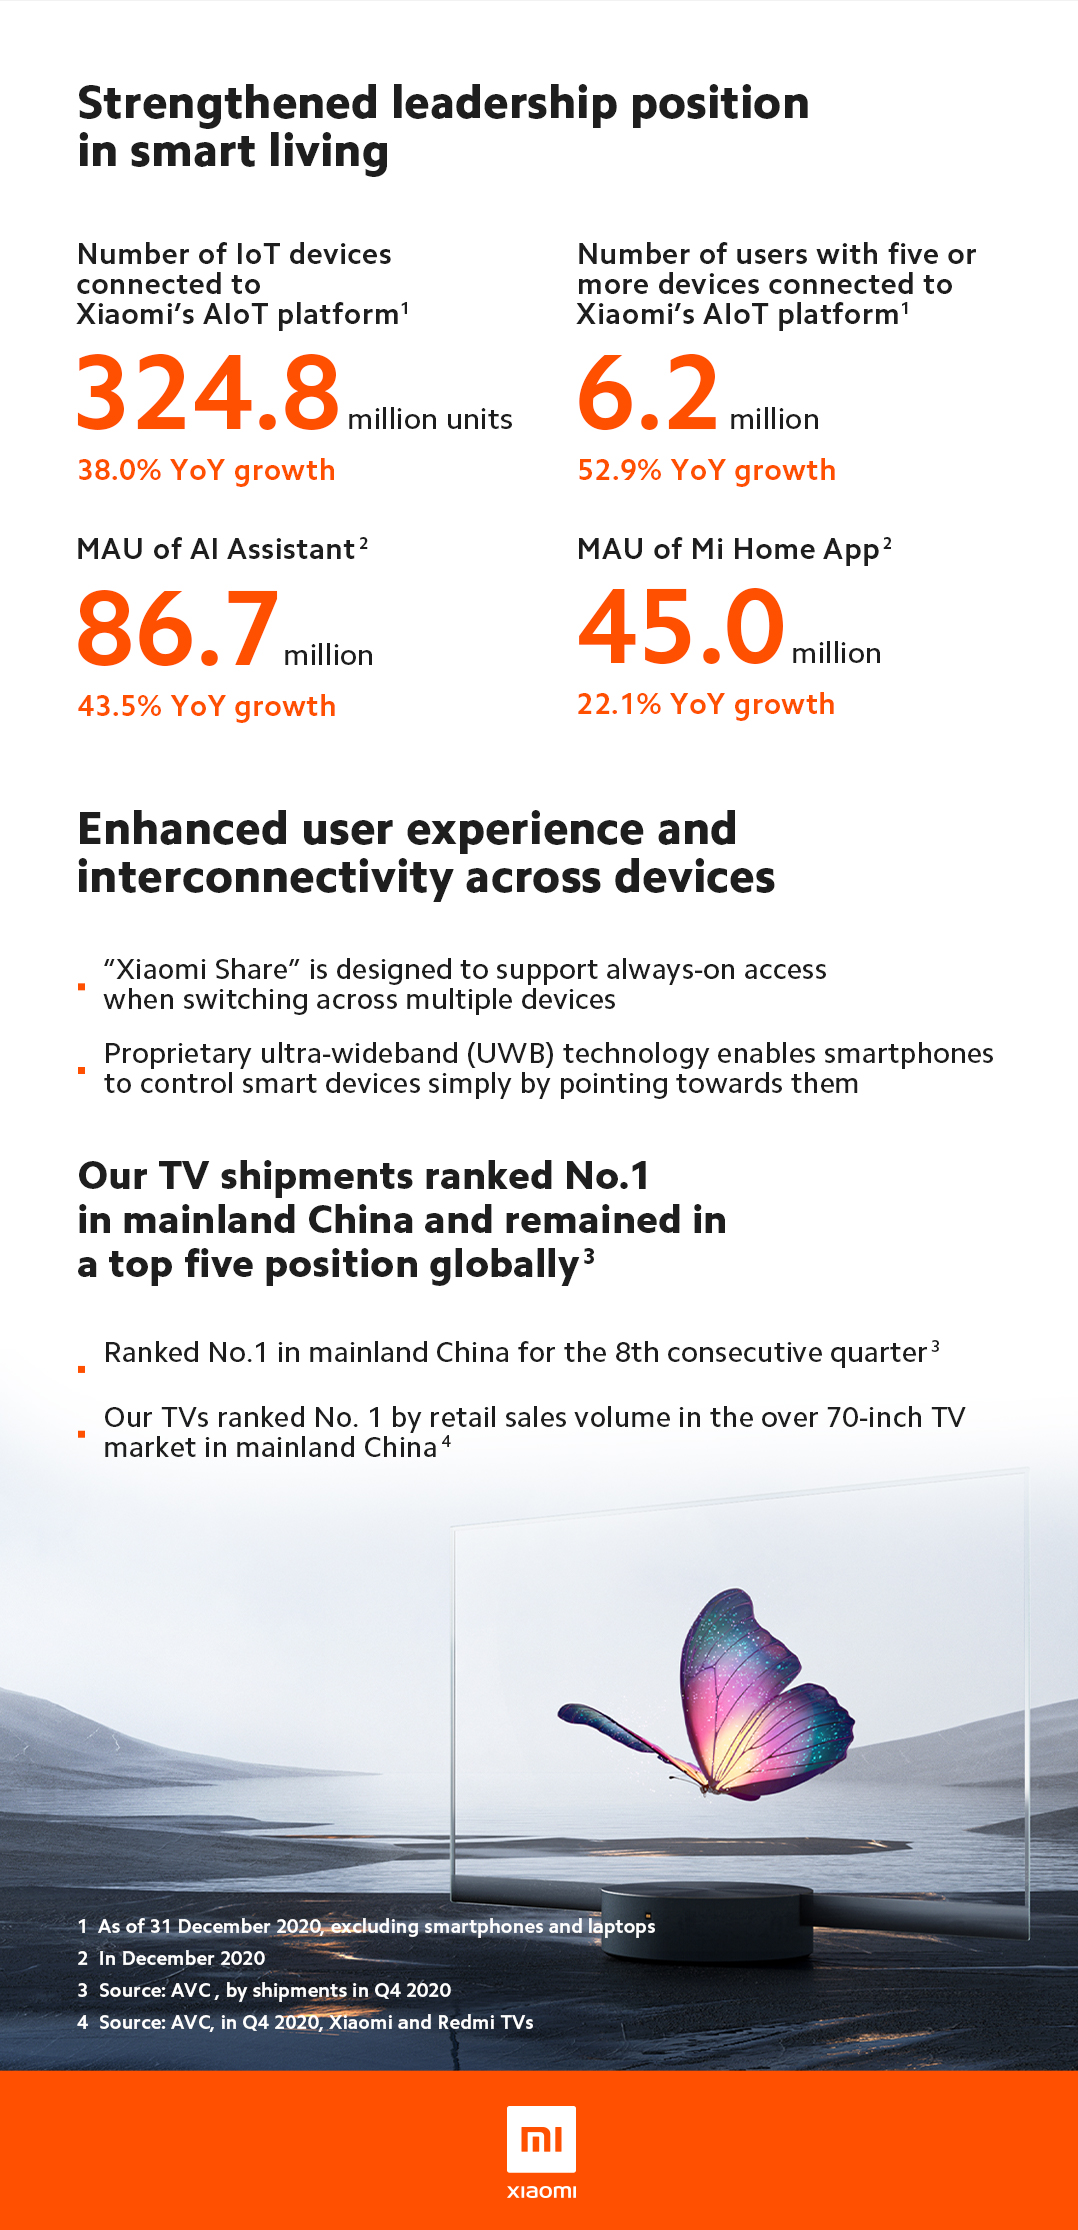 Xiaomi: Doanh thu và lợi nhuận tăng trưởng bền vững trong năm 2020